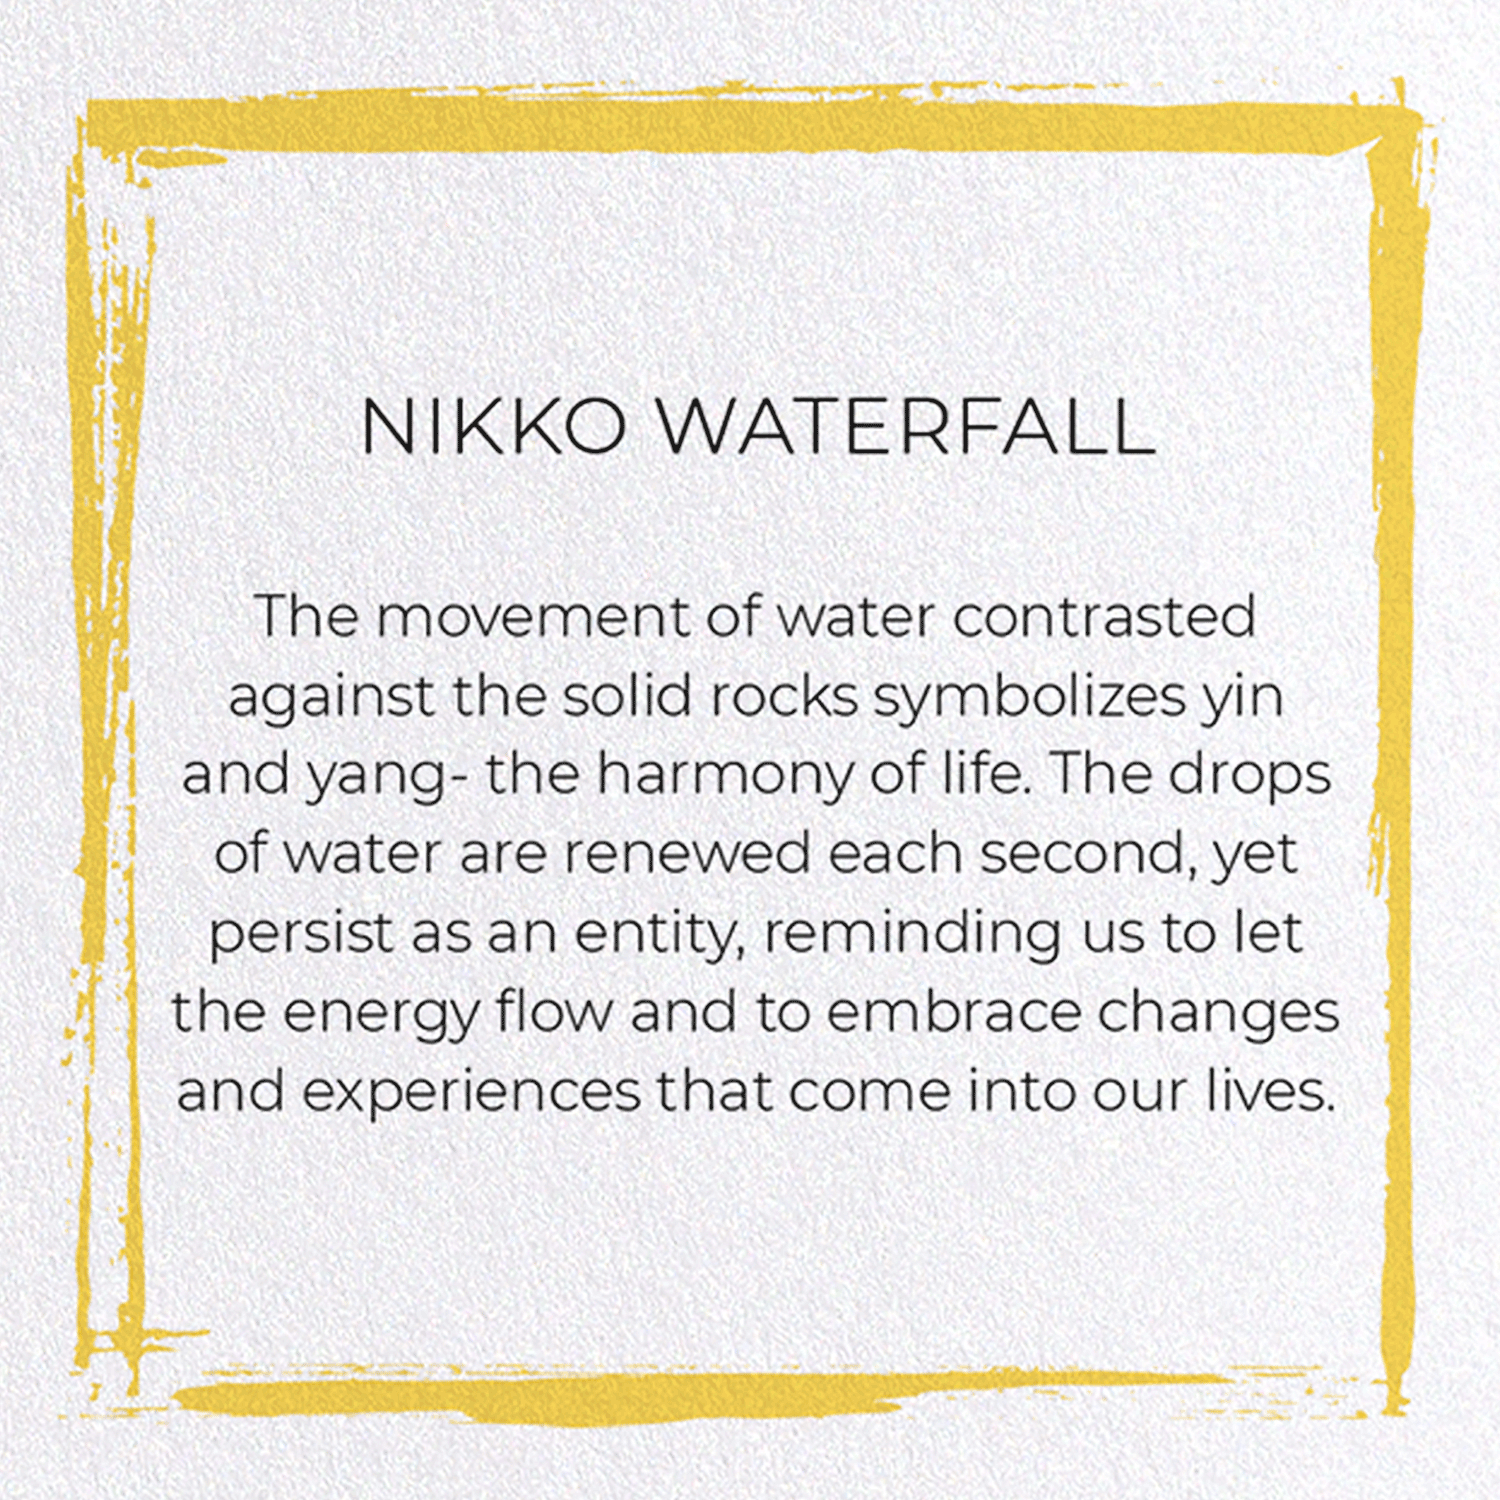 NIKKO WATERFALL: Japanese Greeting Card